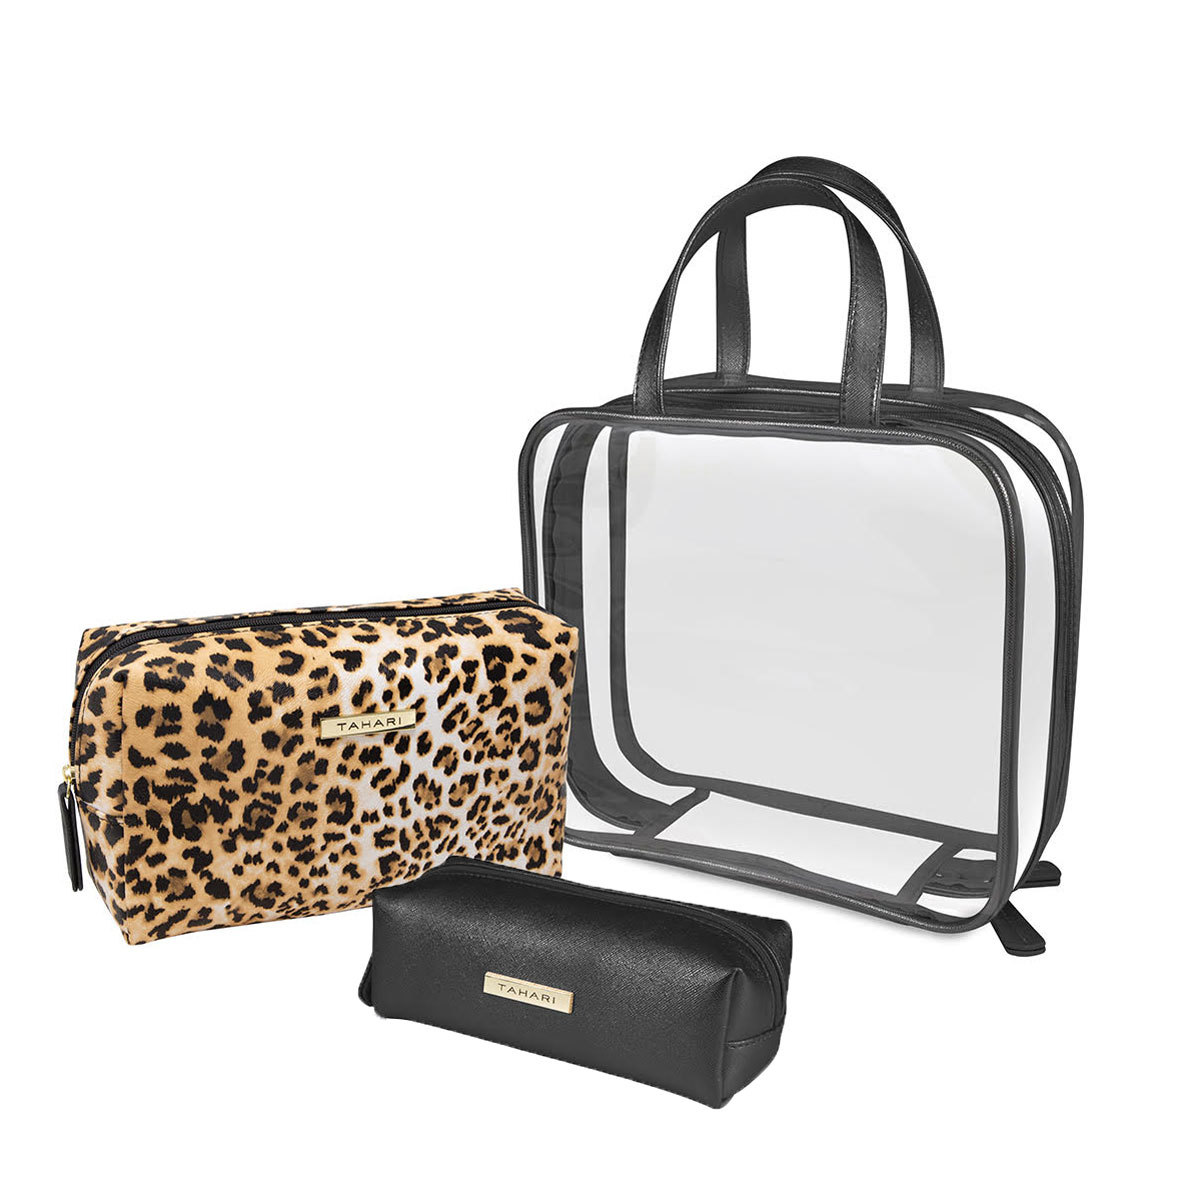 Tahari Cosmetic Bag Triple Pack - Leopard | Costco UK